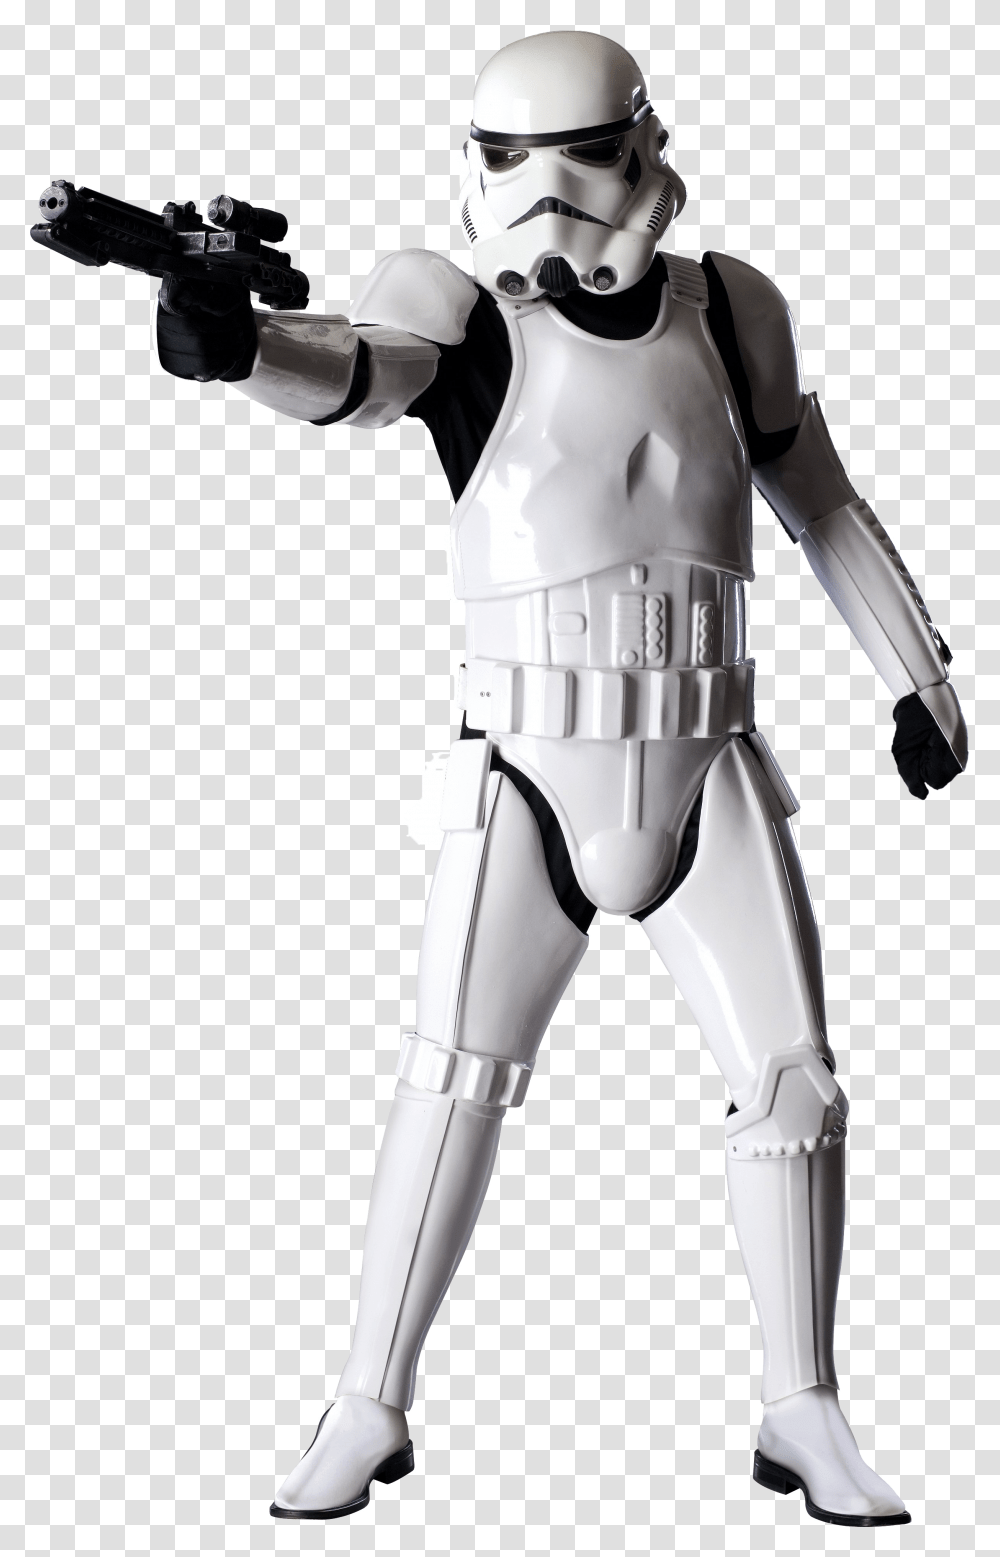 Star Wars Stormtrooper Star Wars Stormtrooper, Robot, Apparel, Helmet Transparent Png